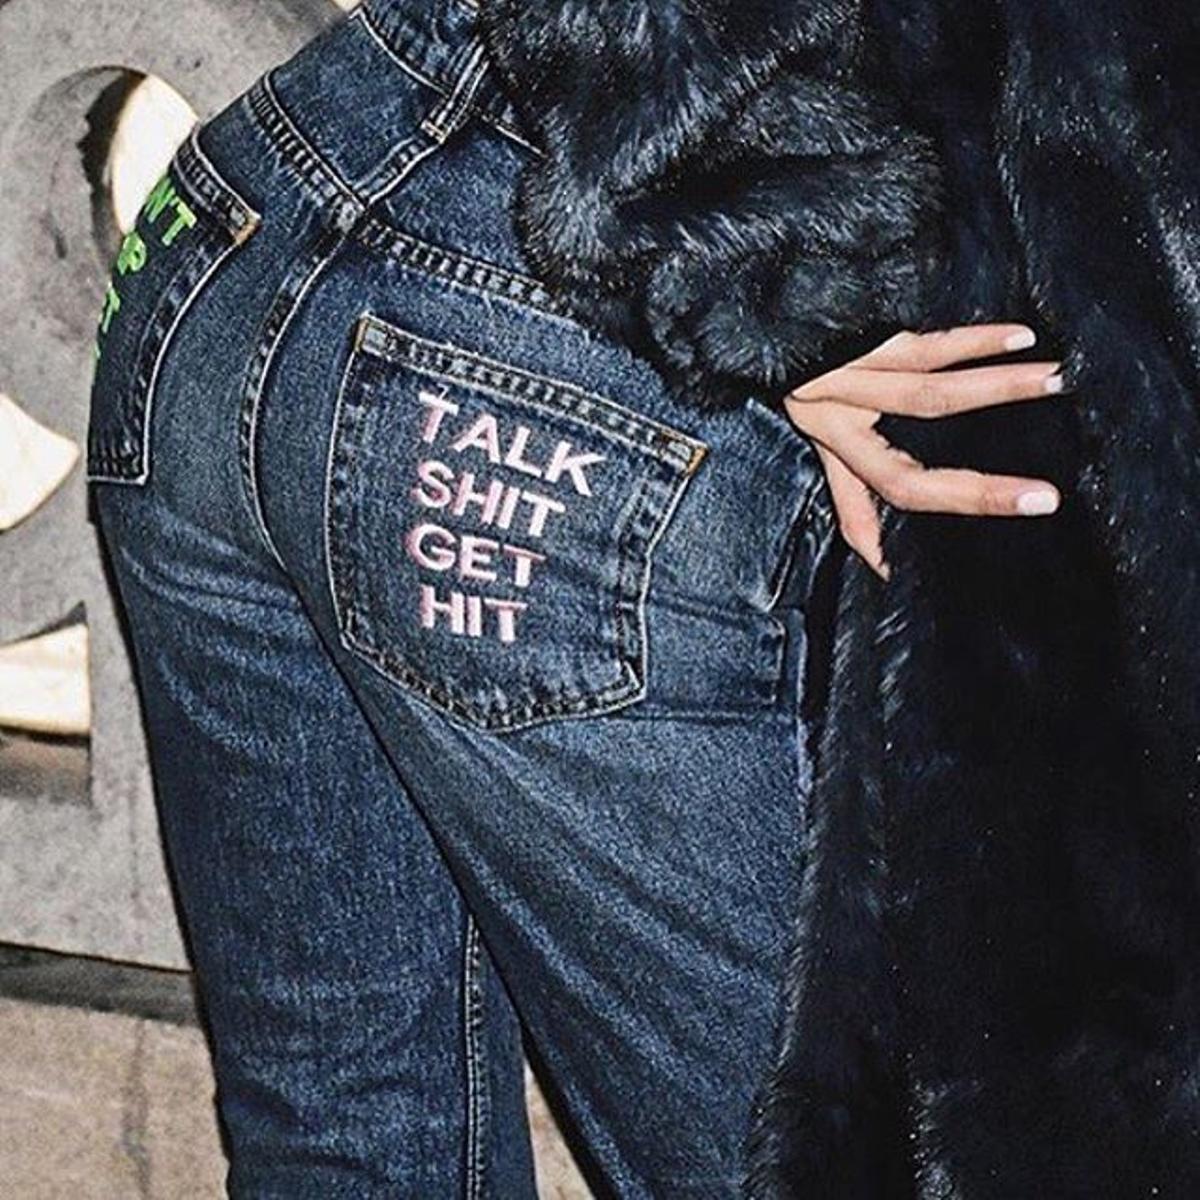 Jeans 'Talk shit get hit' de la colección O/I 2016 de Alexander Wang